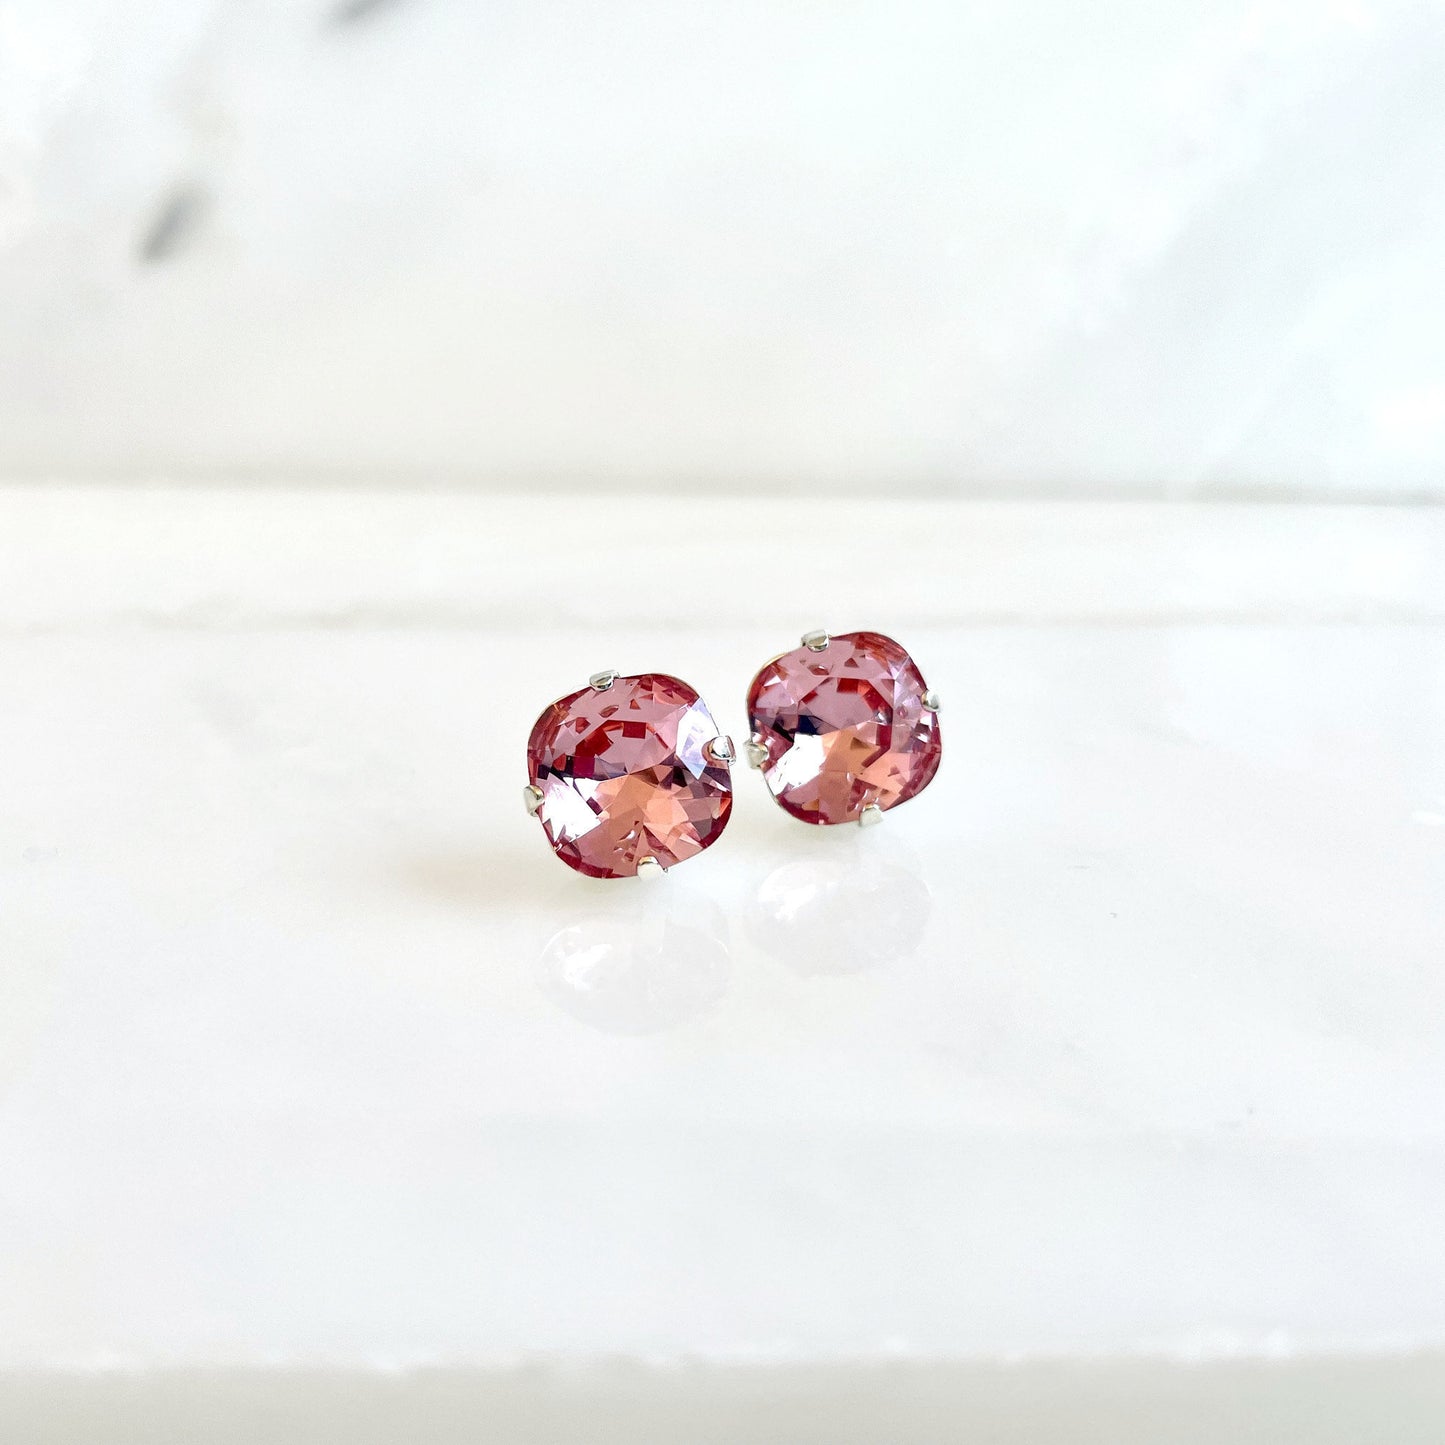 Pink crystal post earrings